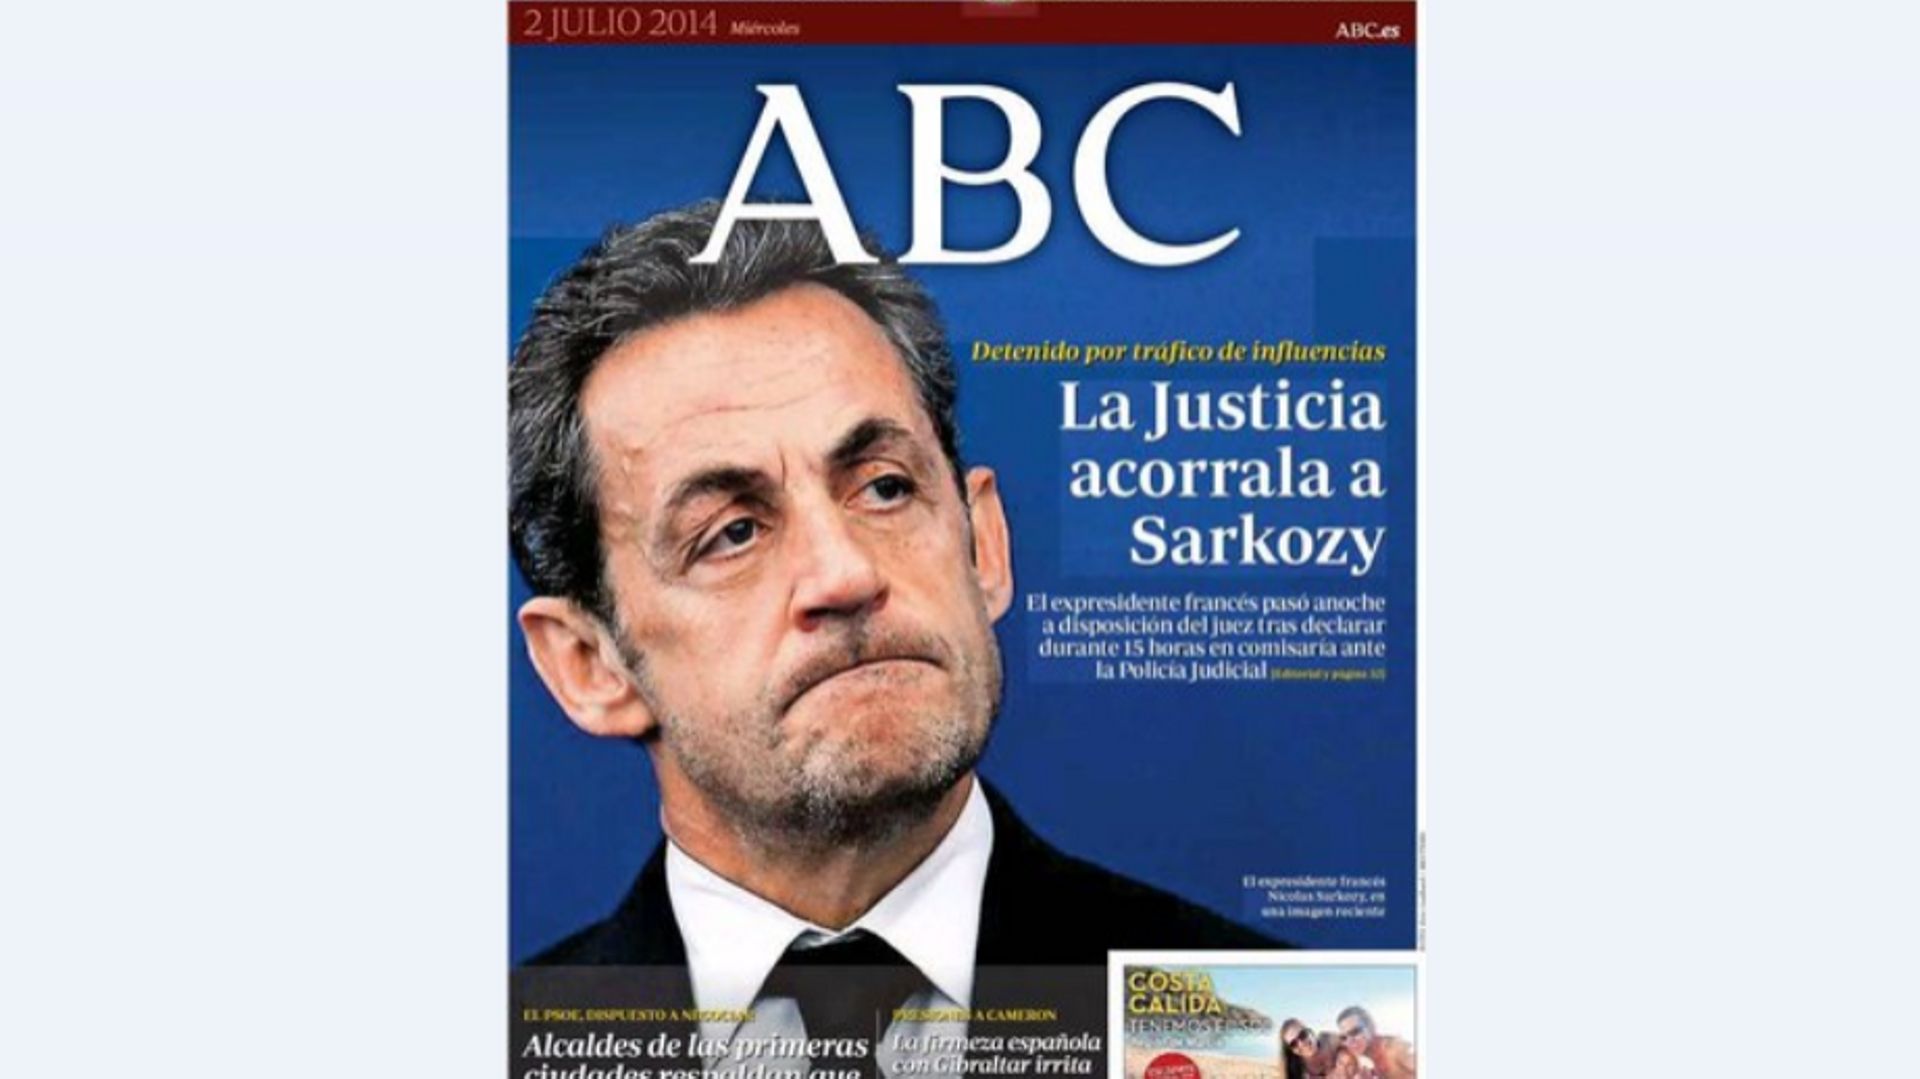 Affaire Sarkozy: le regard de la presse internationale